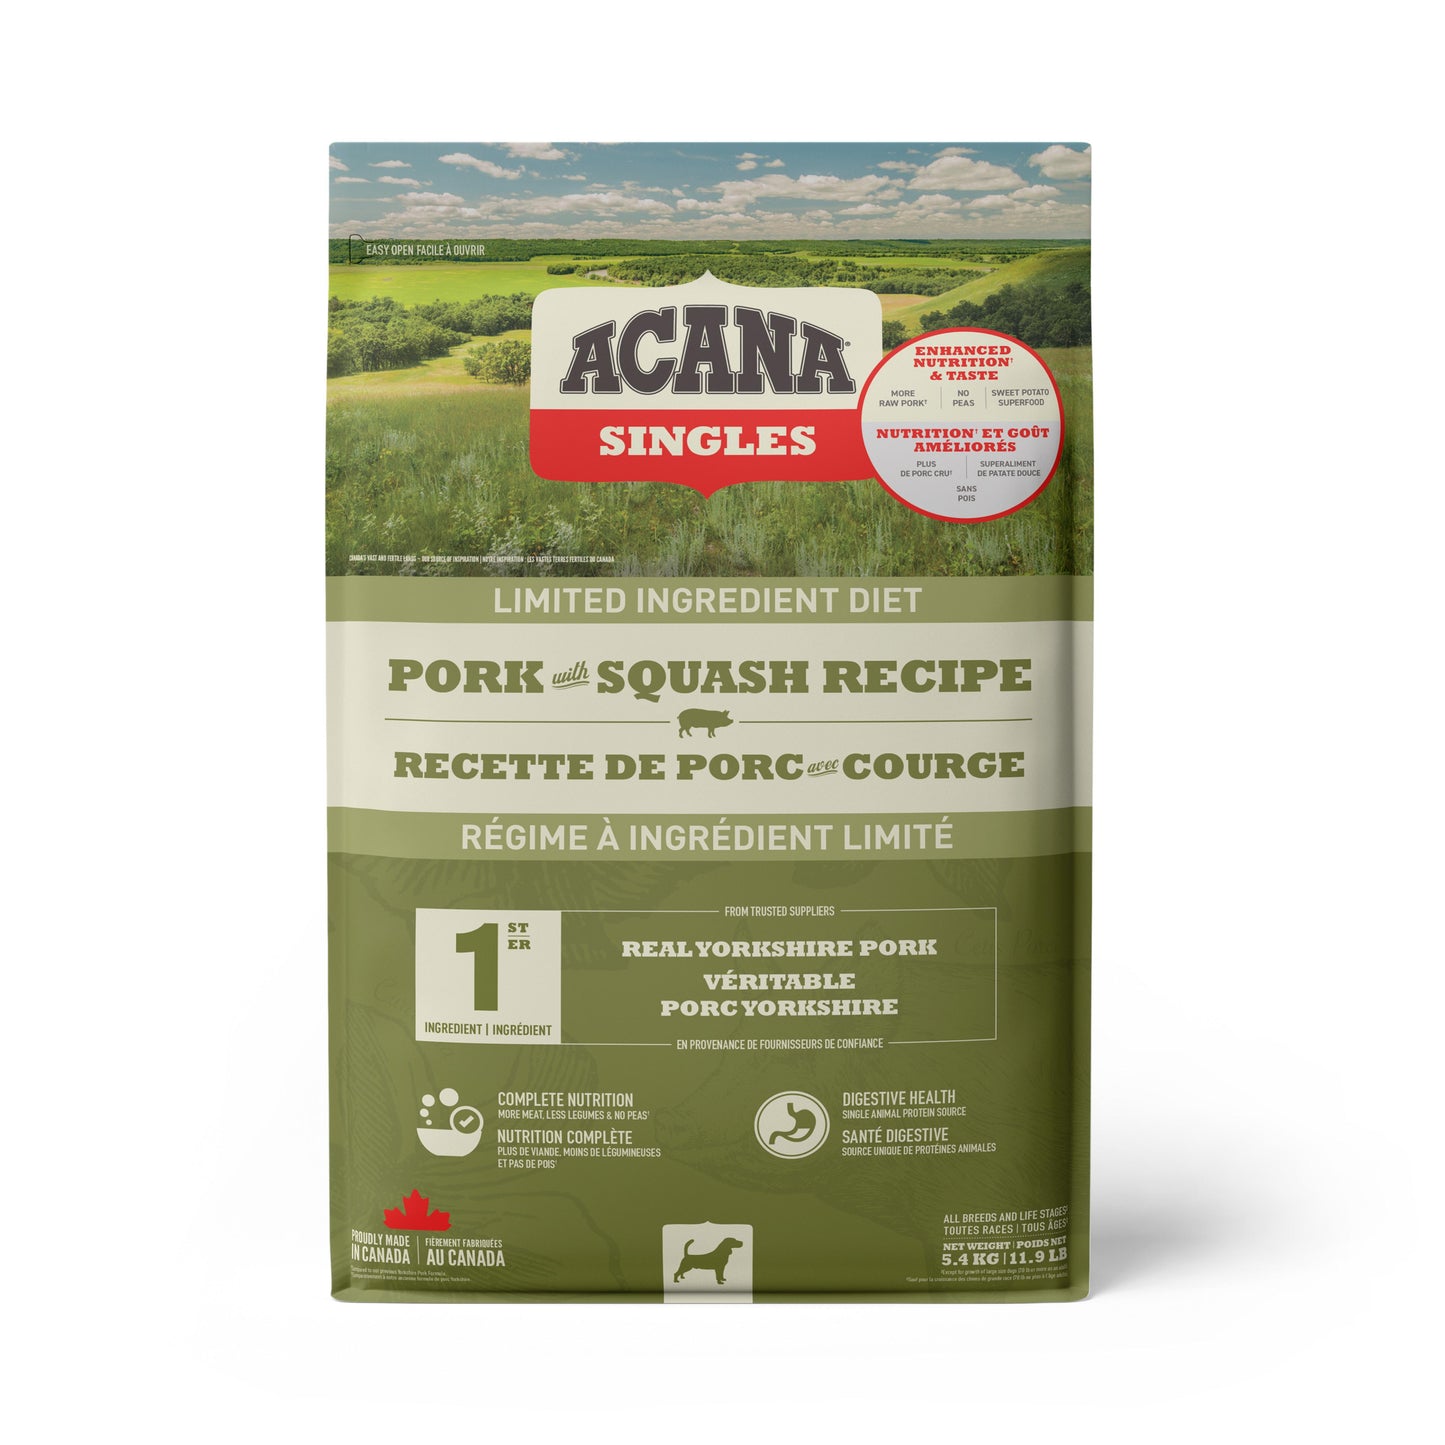 ACANA Pork with Squash Recipe Dog Food